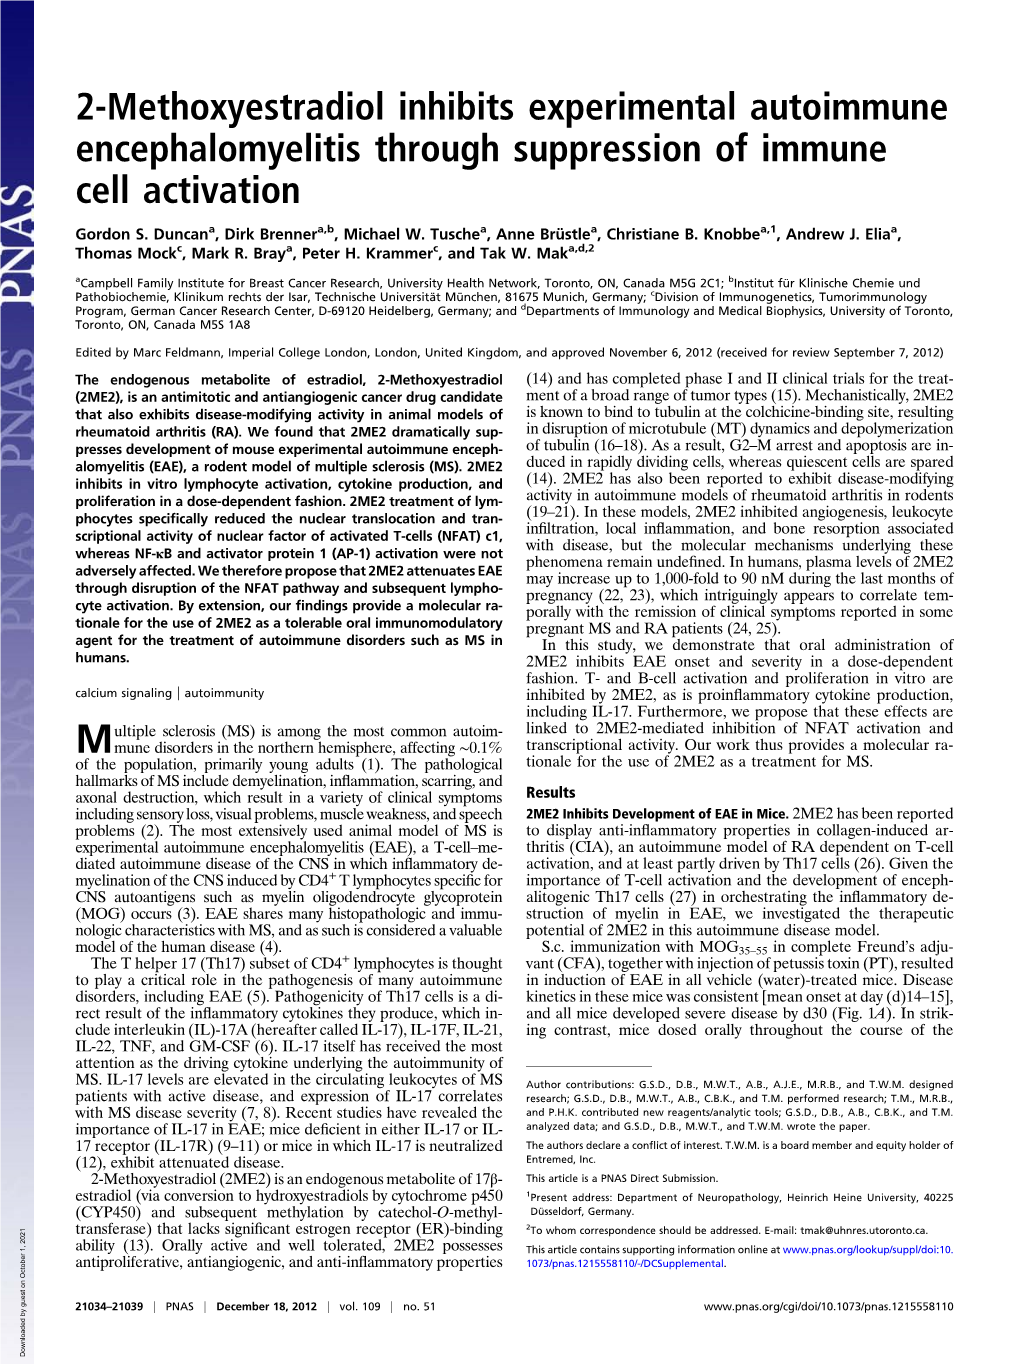 2-Methoxyestradiol Inhibits Experimental Autoimmune Encephalomyelitis Through Suppression of Immune Cell Activation